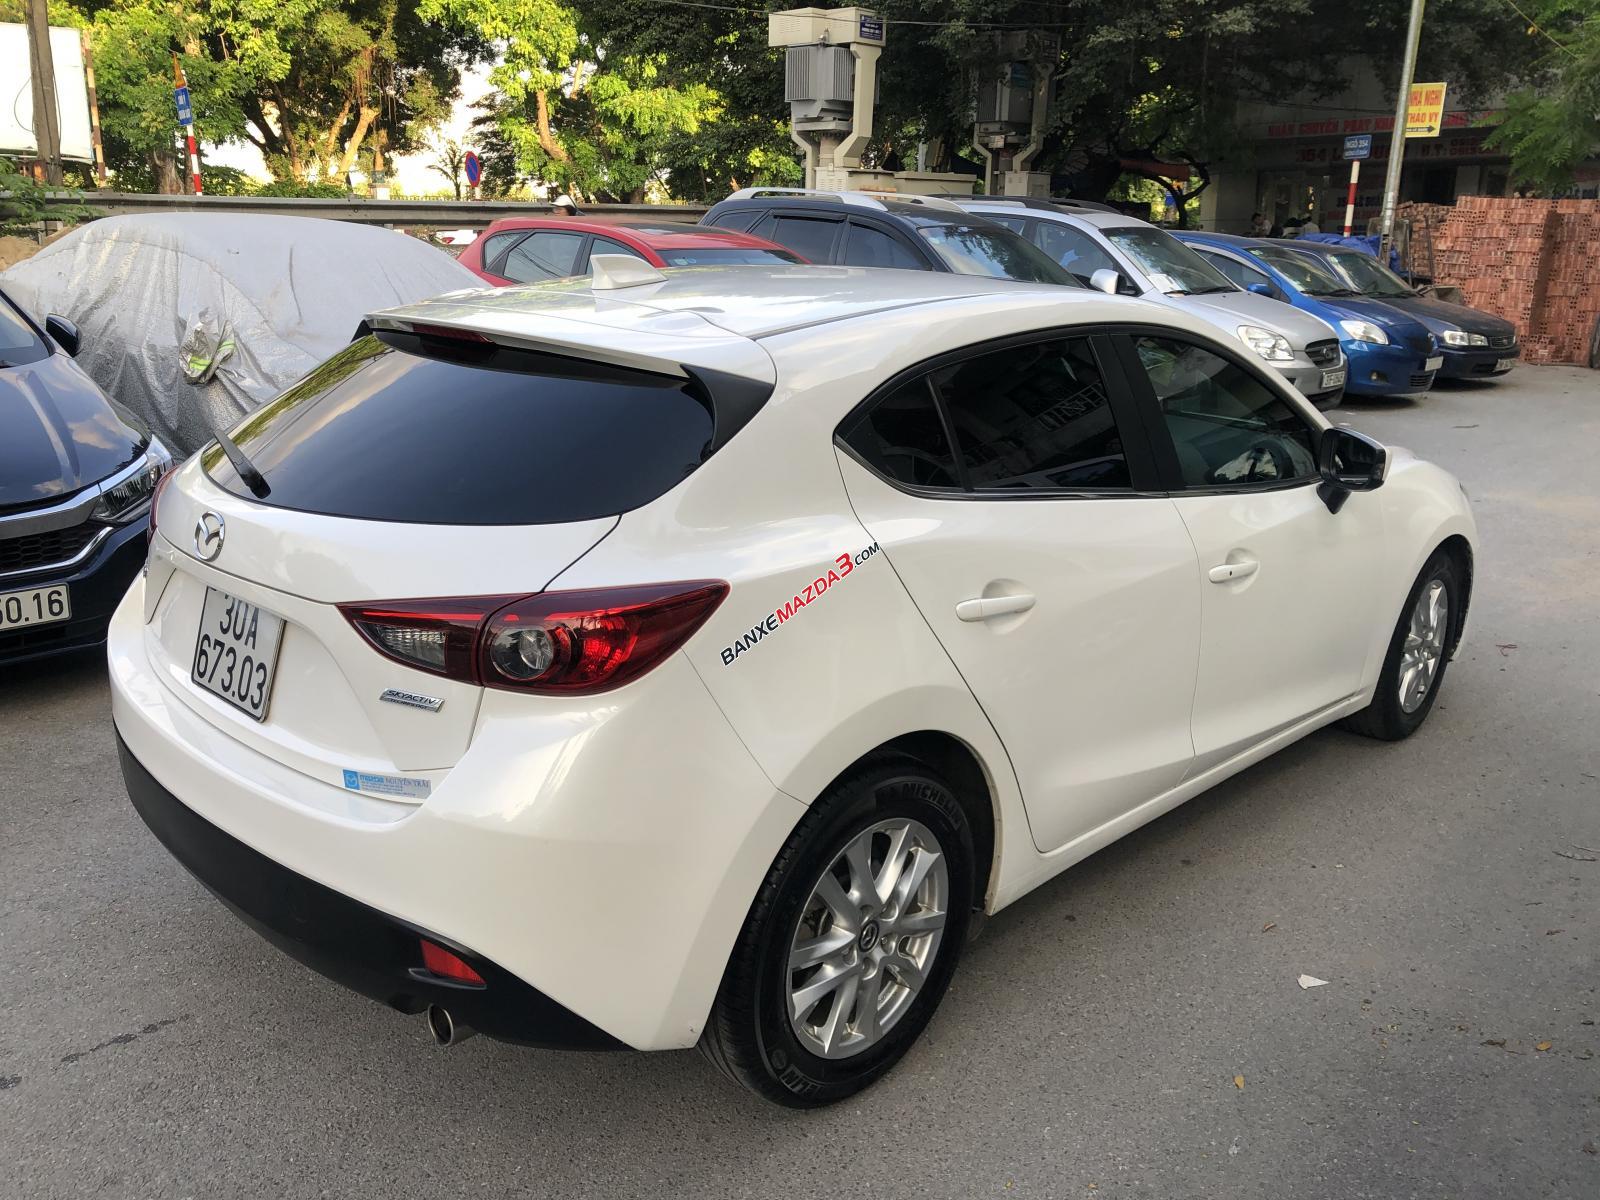 Cần bán xe Mazda 3 tự động, đời 2015 nguyên bản và còn rât mới